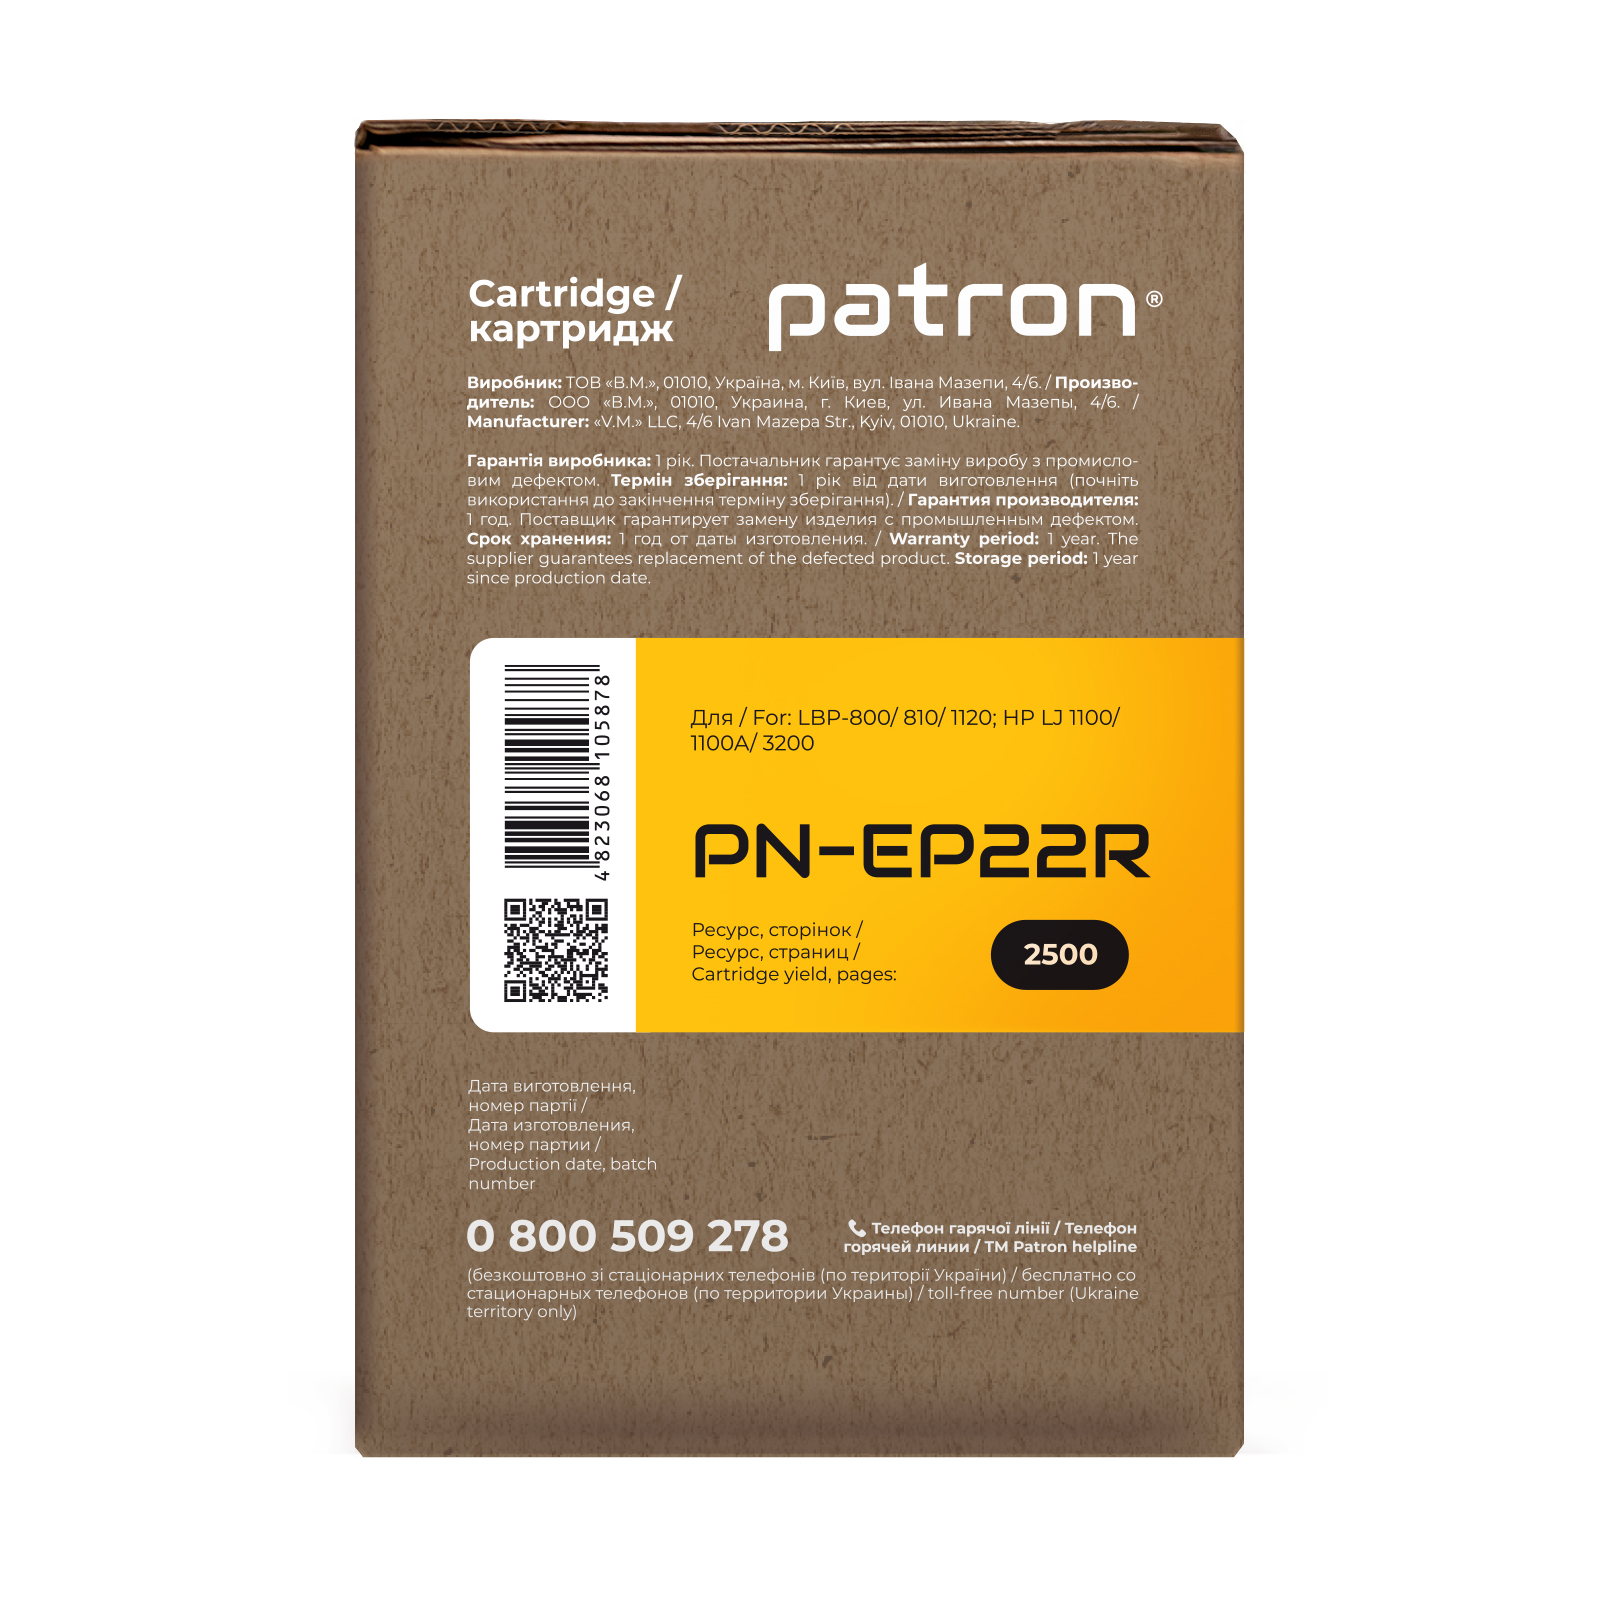 Картридж Patron CANON EP-22 Extra (PN-EP22R) зображення 3